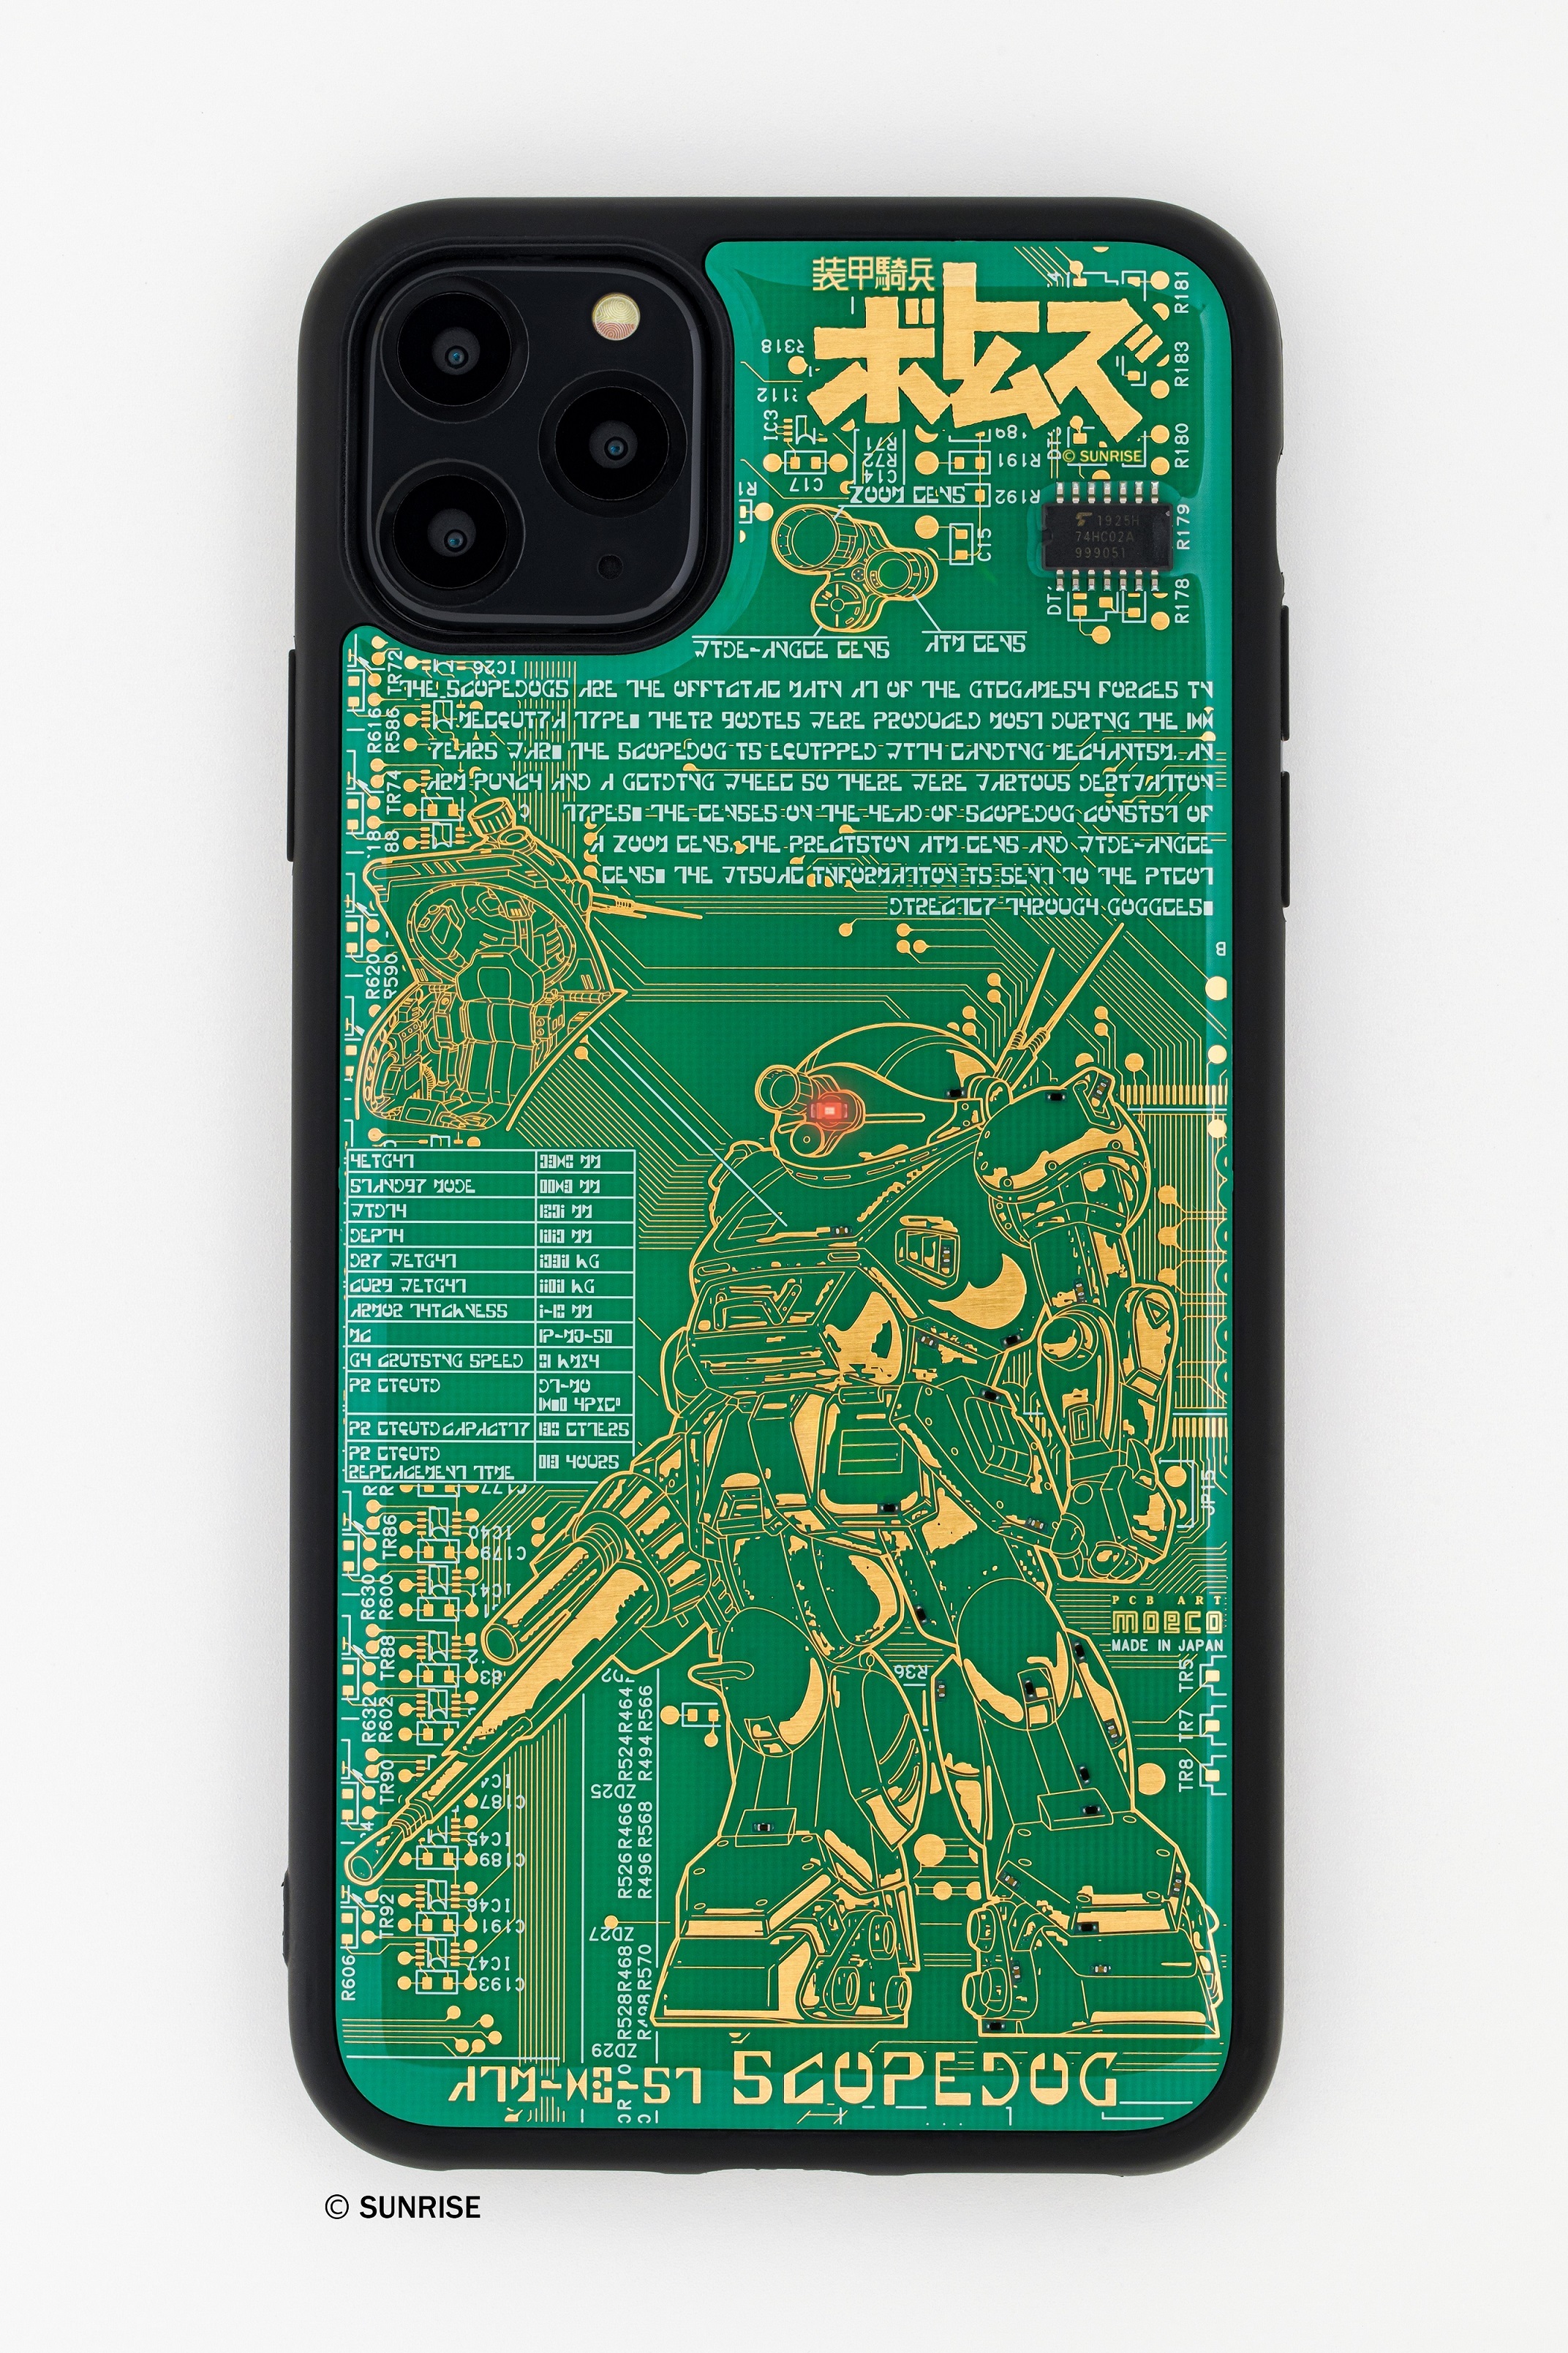 装甲騎兵ボトムズ のスコープドッグをデザインした新型iphone 11 Icカード用ケースが本日2 17発売 アキバ総研